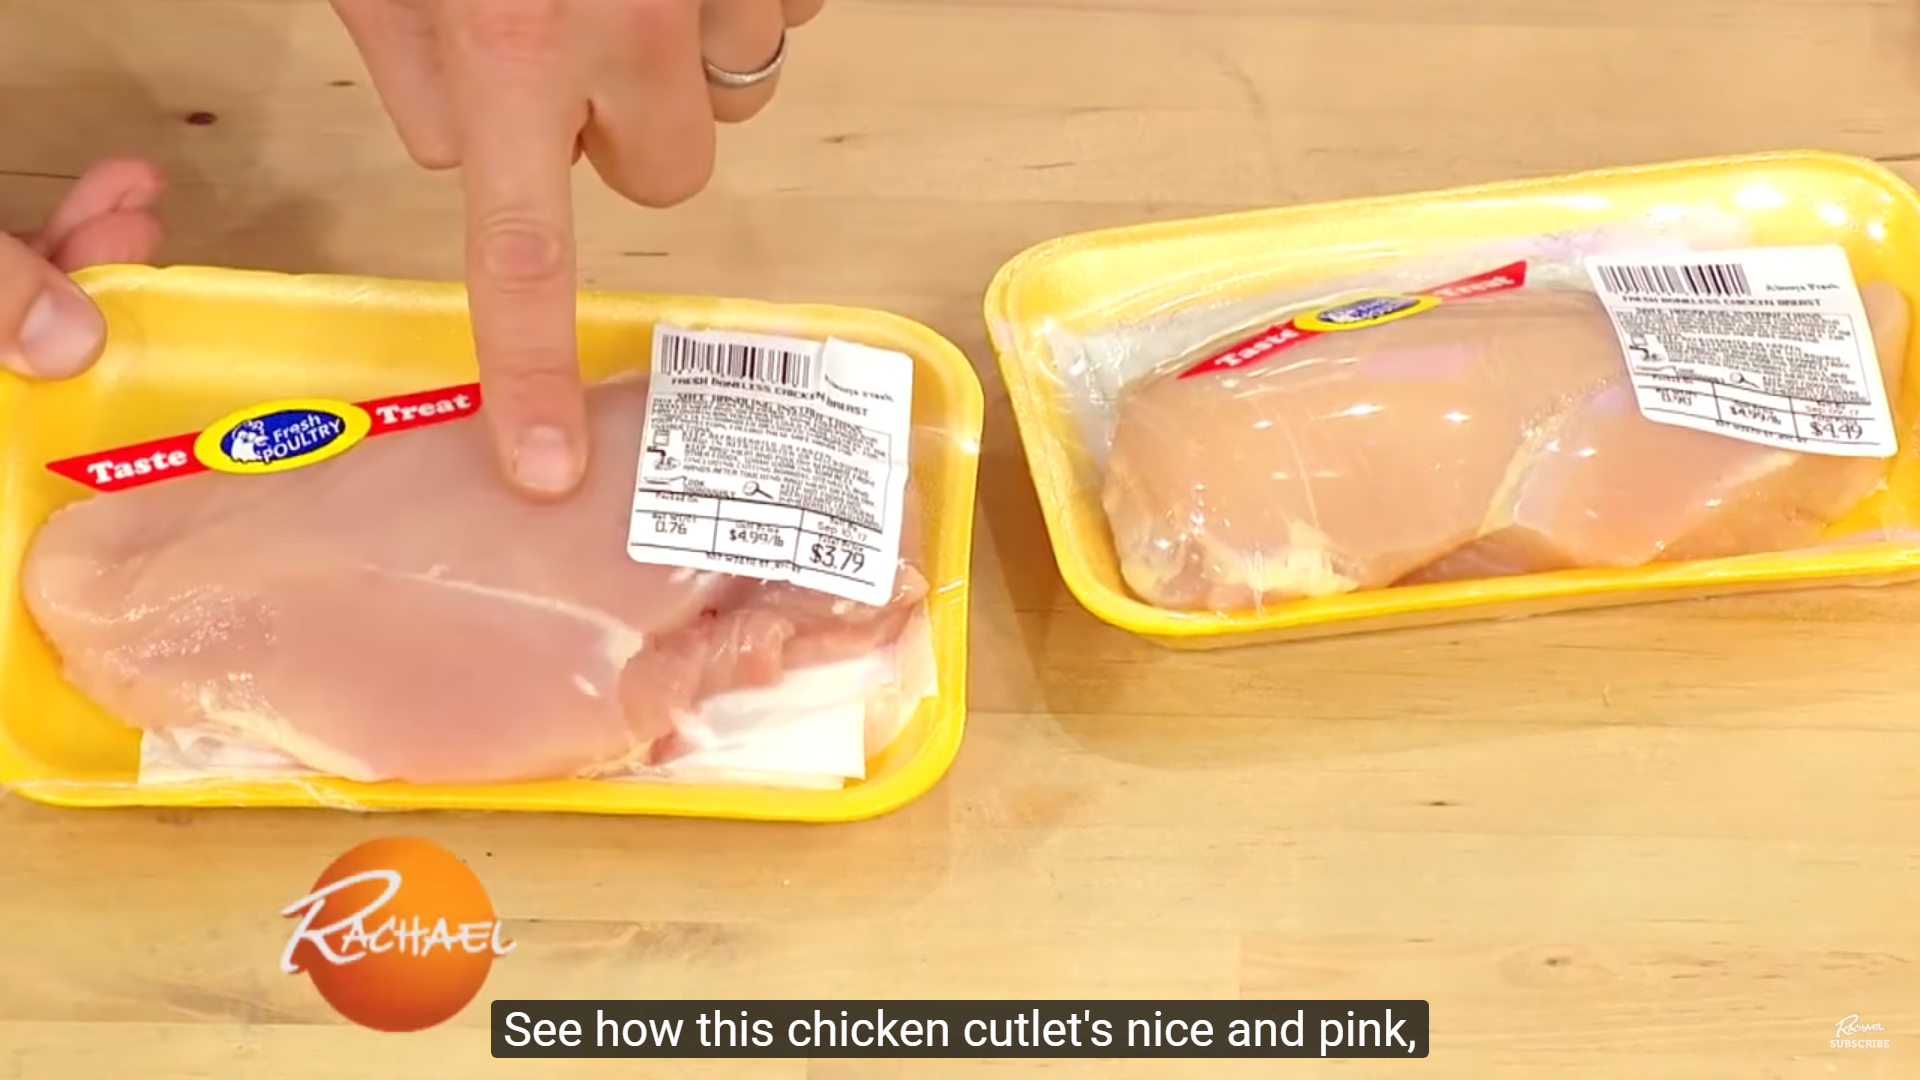 Hasznos trükk: így döntheti el, mennyire friss az előre csomagolt hús -  videó - Blikk